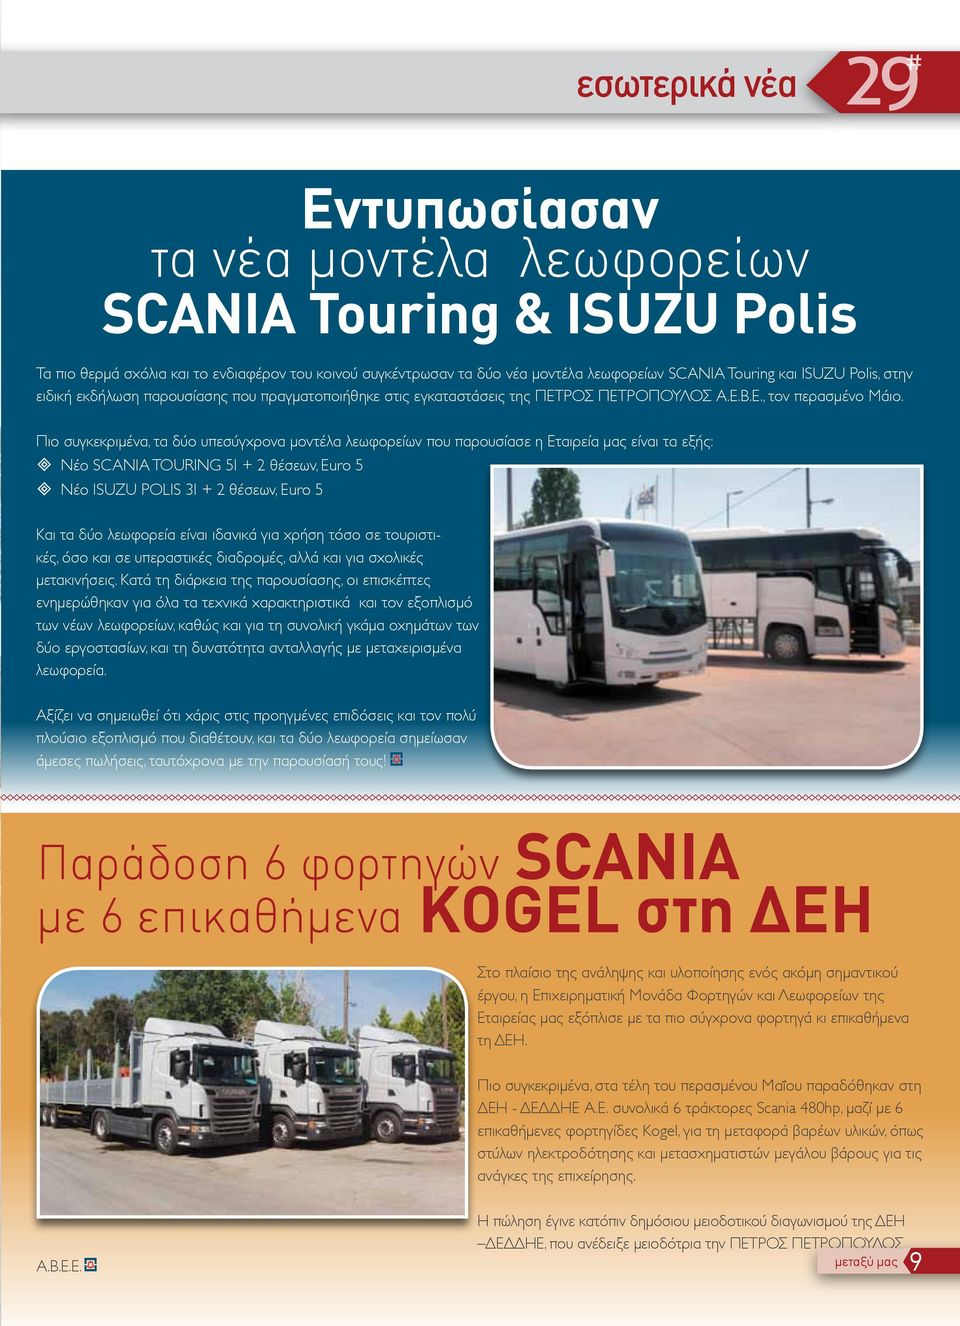 Πιο συγκεκριμένα, τα δύο υπεσύγχρονα μοντέλα λεωφορείων που παρουσίασε η Εταιρεία μας είναι τα εξής: ³ Νέο SCANIA TOURING 51 + 2 θέσεων, Euro 5 ³ Νέο ISUZU POLIS 31 + 2 θέσεων, Euro 5 Και τα δύο